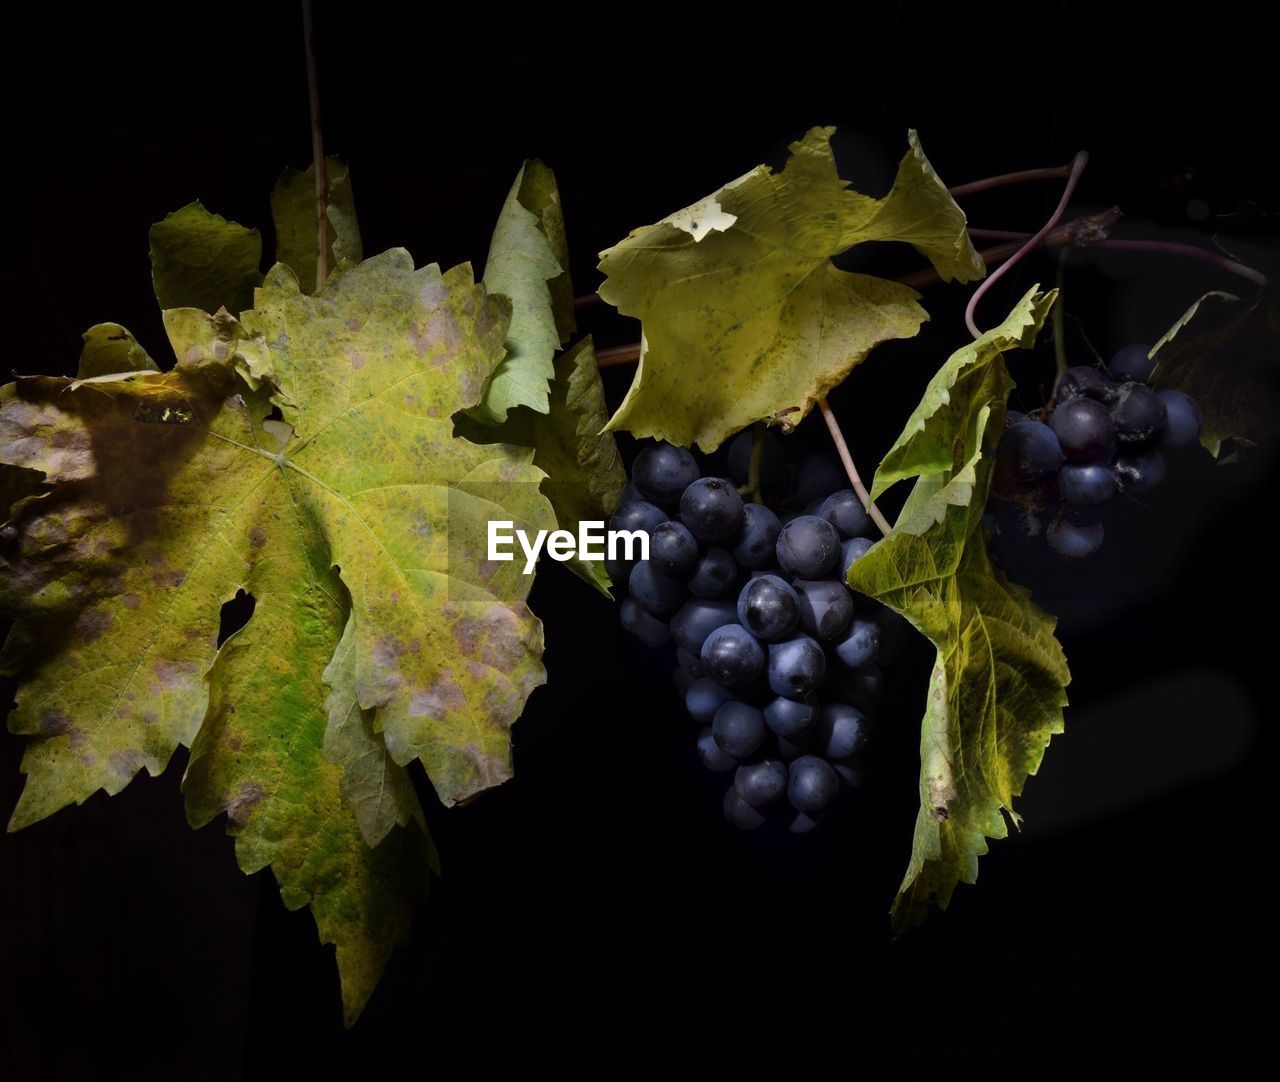 Grapes in vineyard at night